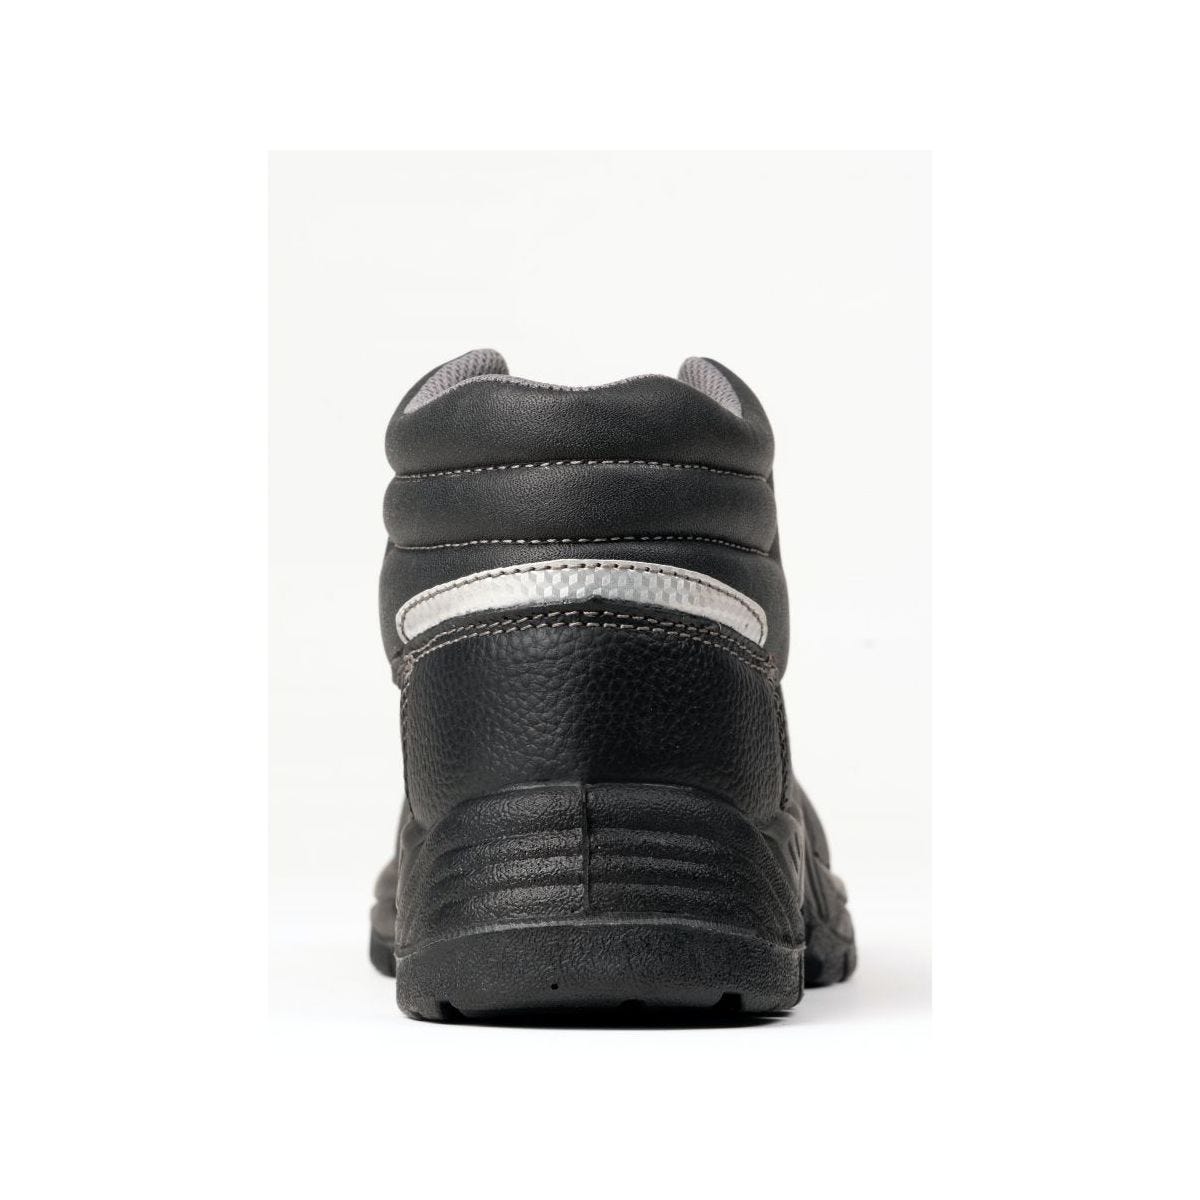 Chaussures de sécurité hautes AGATE II S3 Noir - Coverguard - Taille 42 1